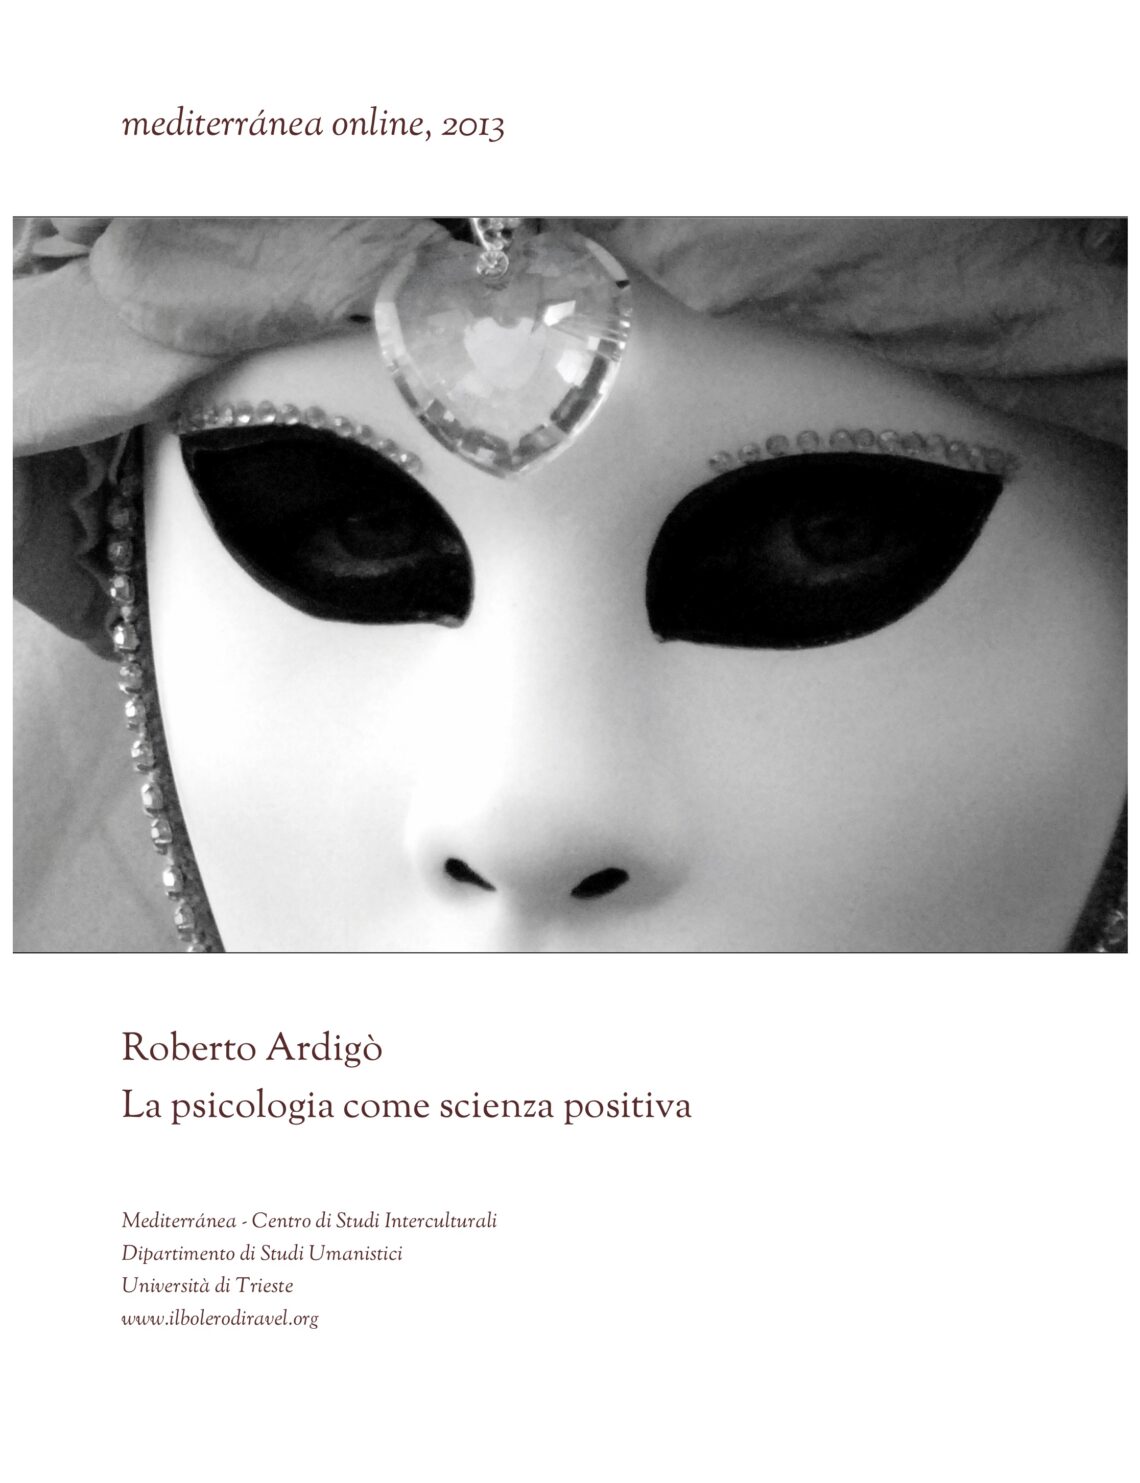 pdf gratuito: Roberto Ardigò: La psicologia come scienza positiva